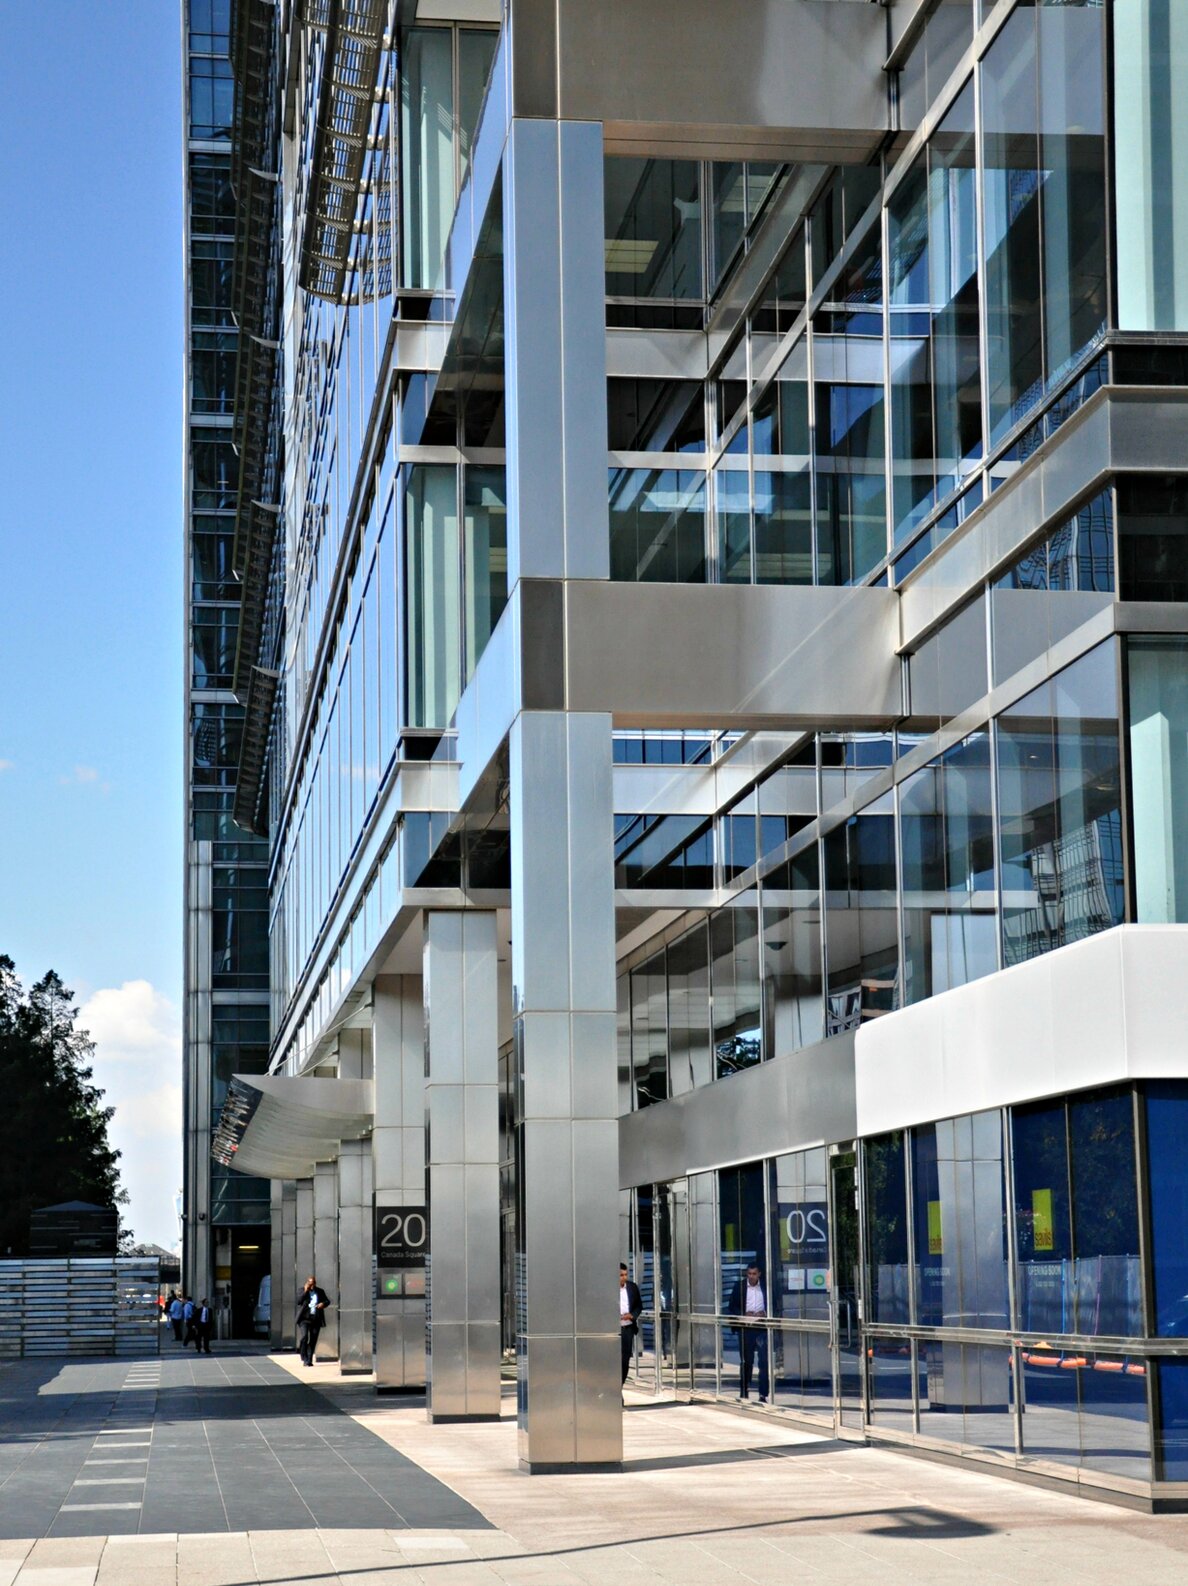 Project image "20th Canada Square", London; Facade design 